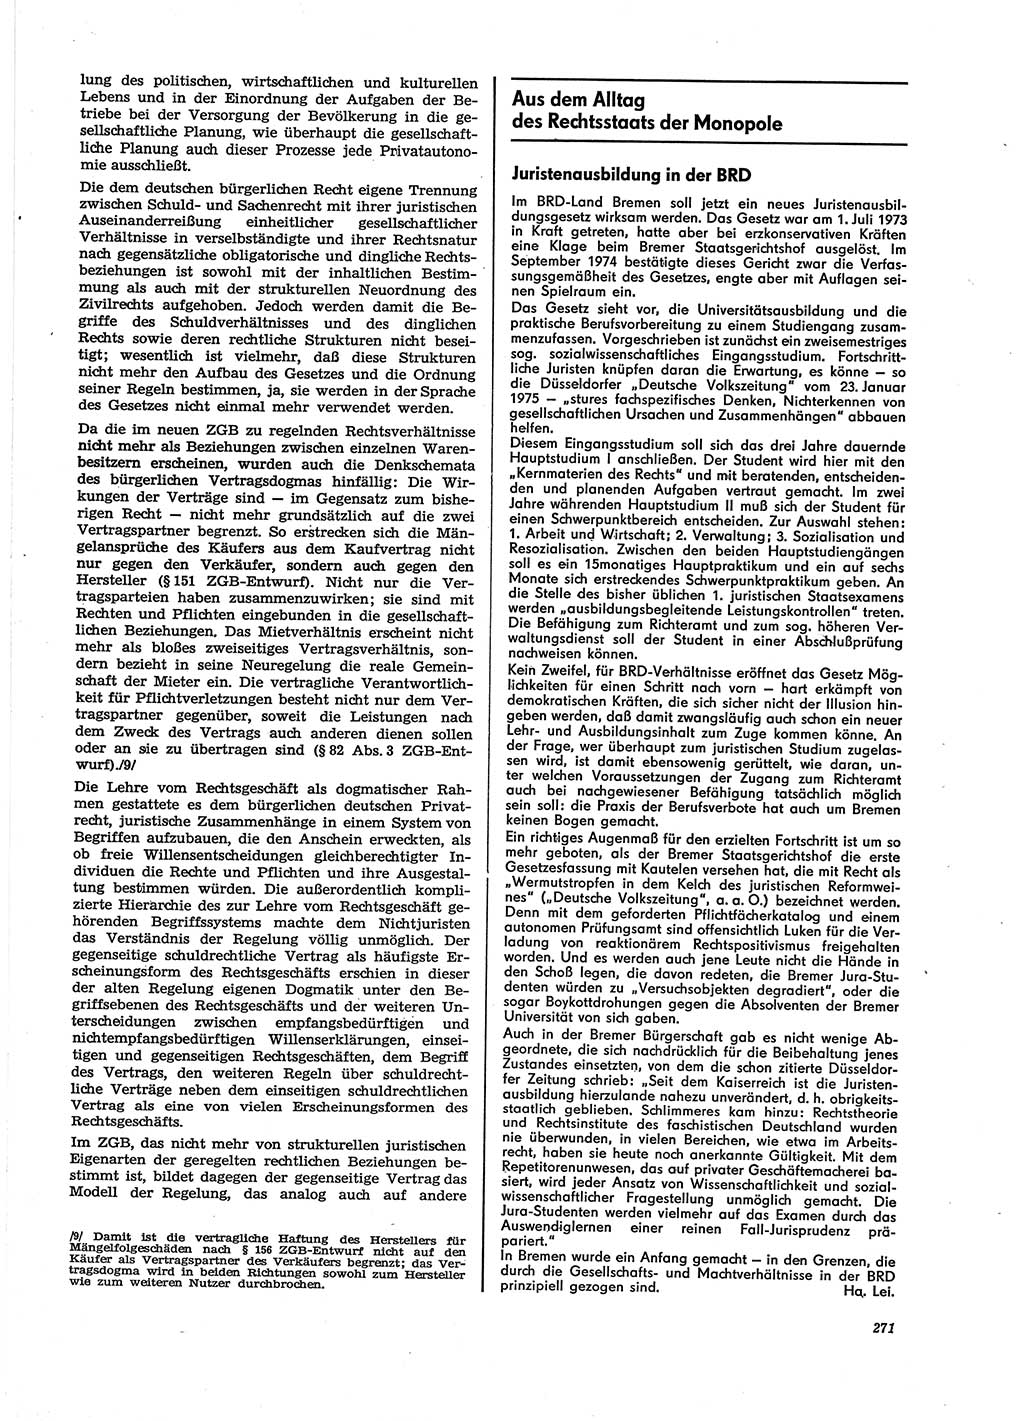 Neue Justiz (NJ), Zeitschrift für Recht und Rechtswissenschaft [Deutsche Demokratische Republik (DDR)], 29. Jahrgang 1975, Seite 271 (NJ DDR 1975, S. 271)